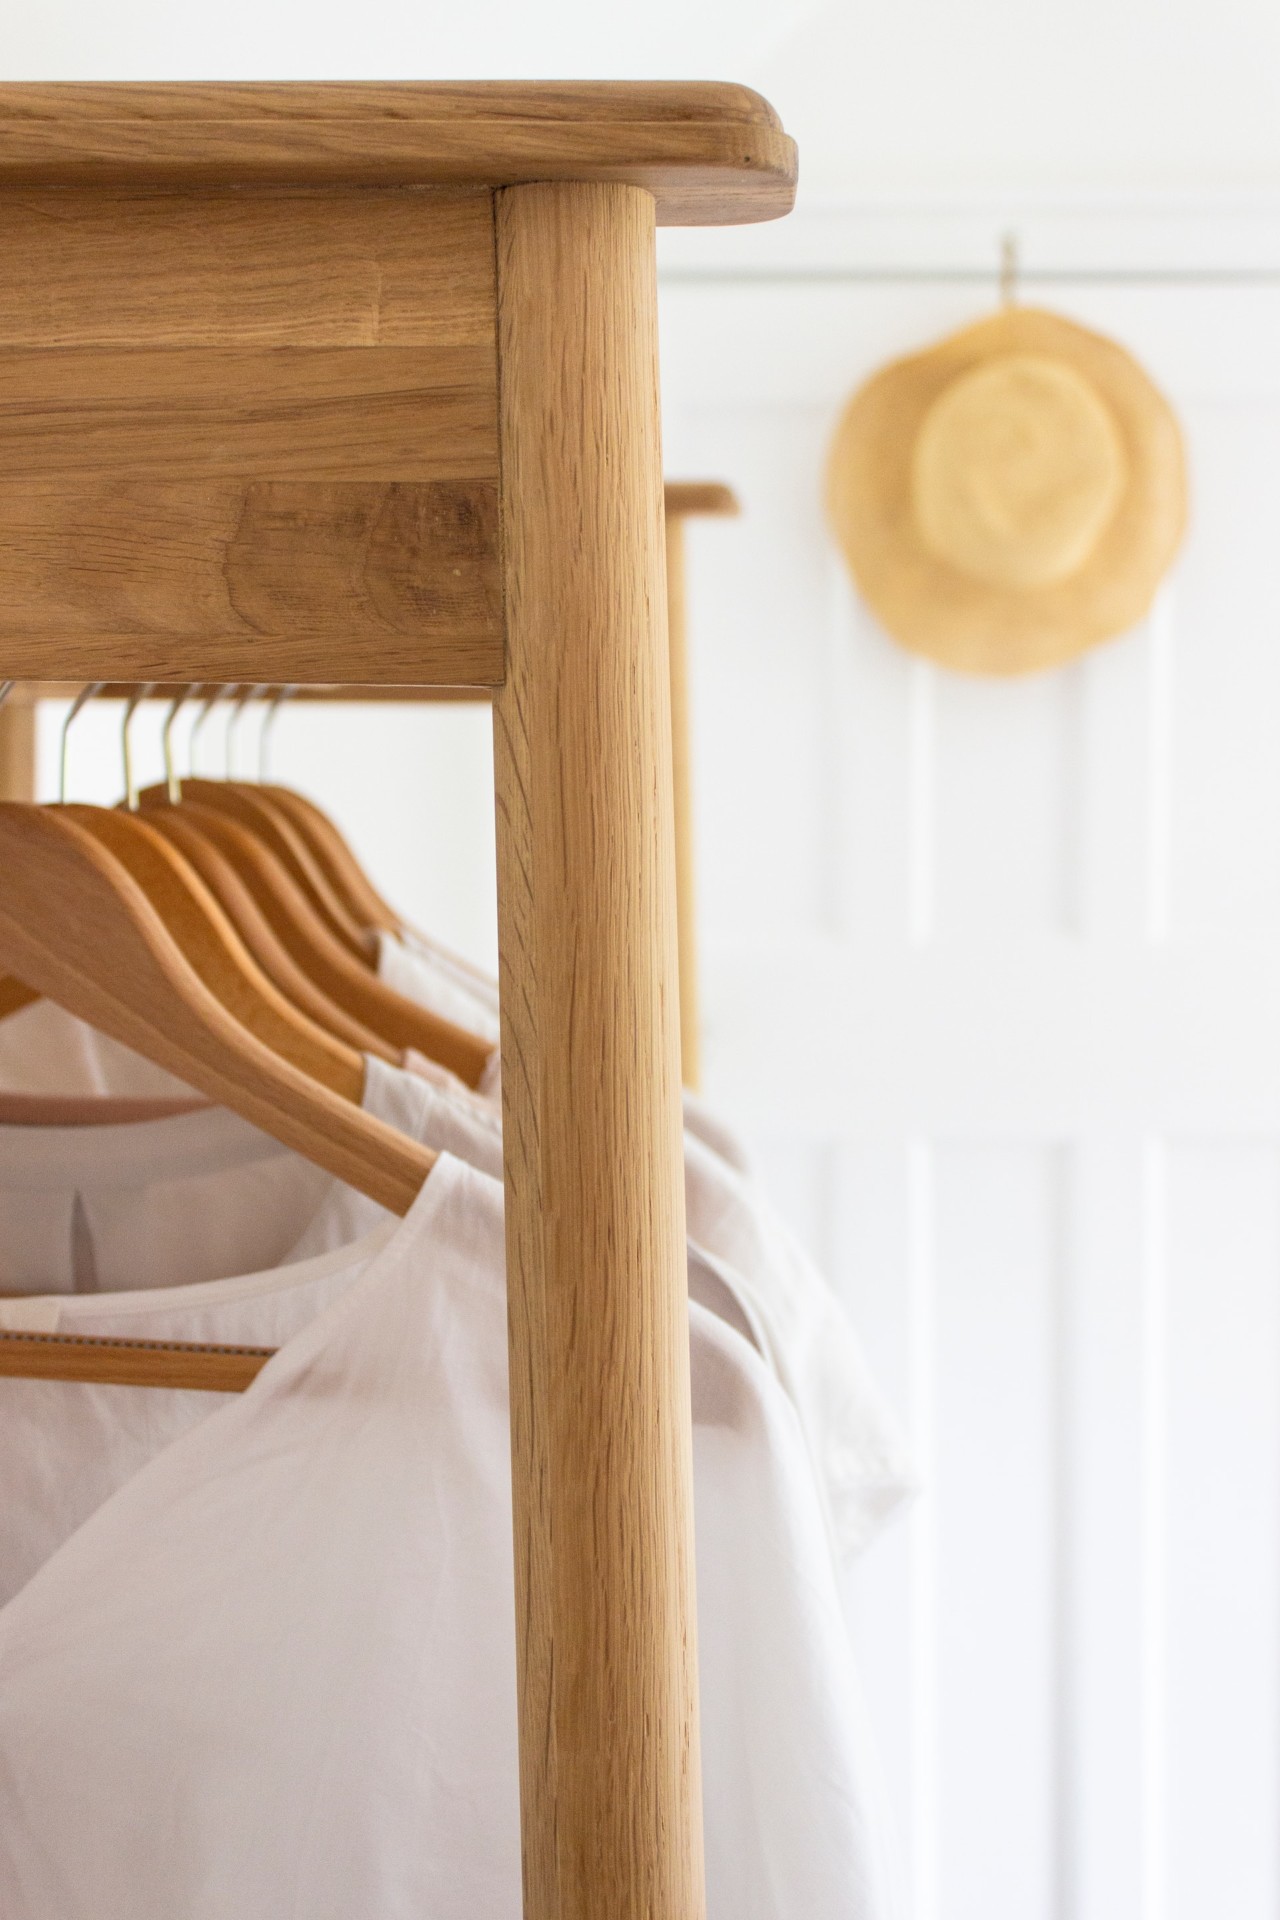 Darf man nasse Wäsche auf Kleiderbügel hängen? Wichtige Infos